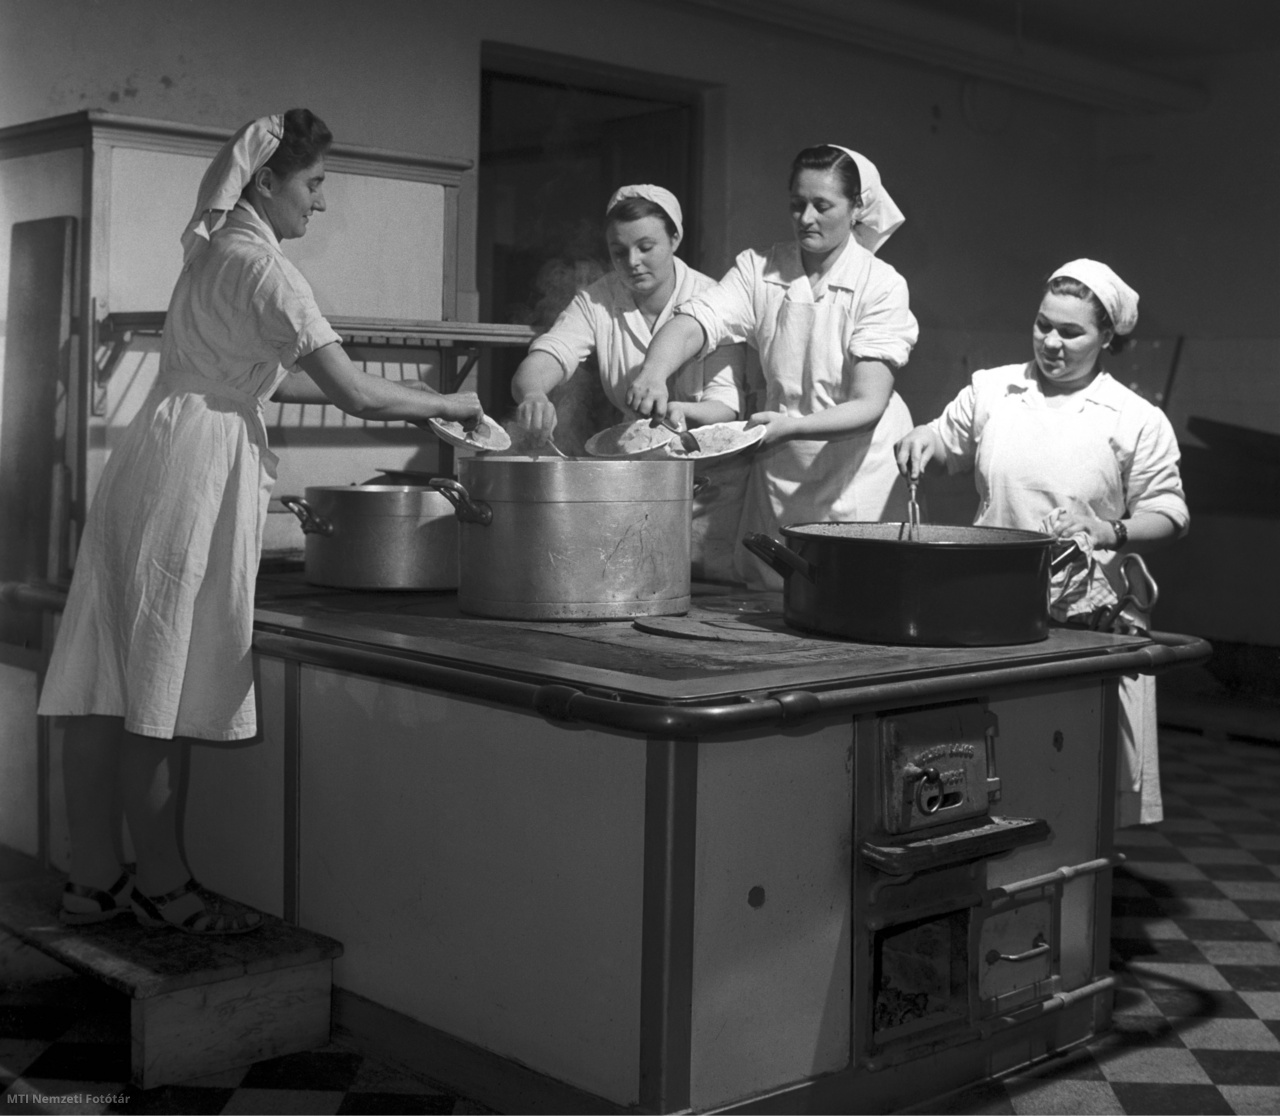 Székesfehérvár, 1959. január 17. Készül az ebéd a Ságvári Endre Gépipari Technikum konyhájában